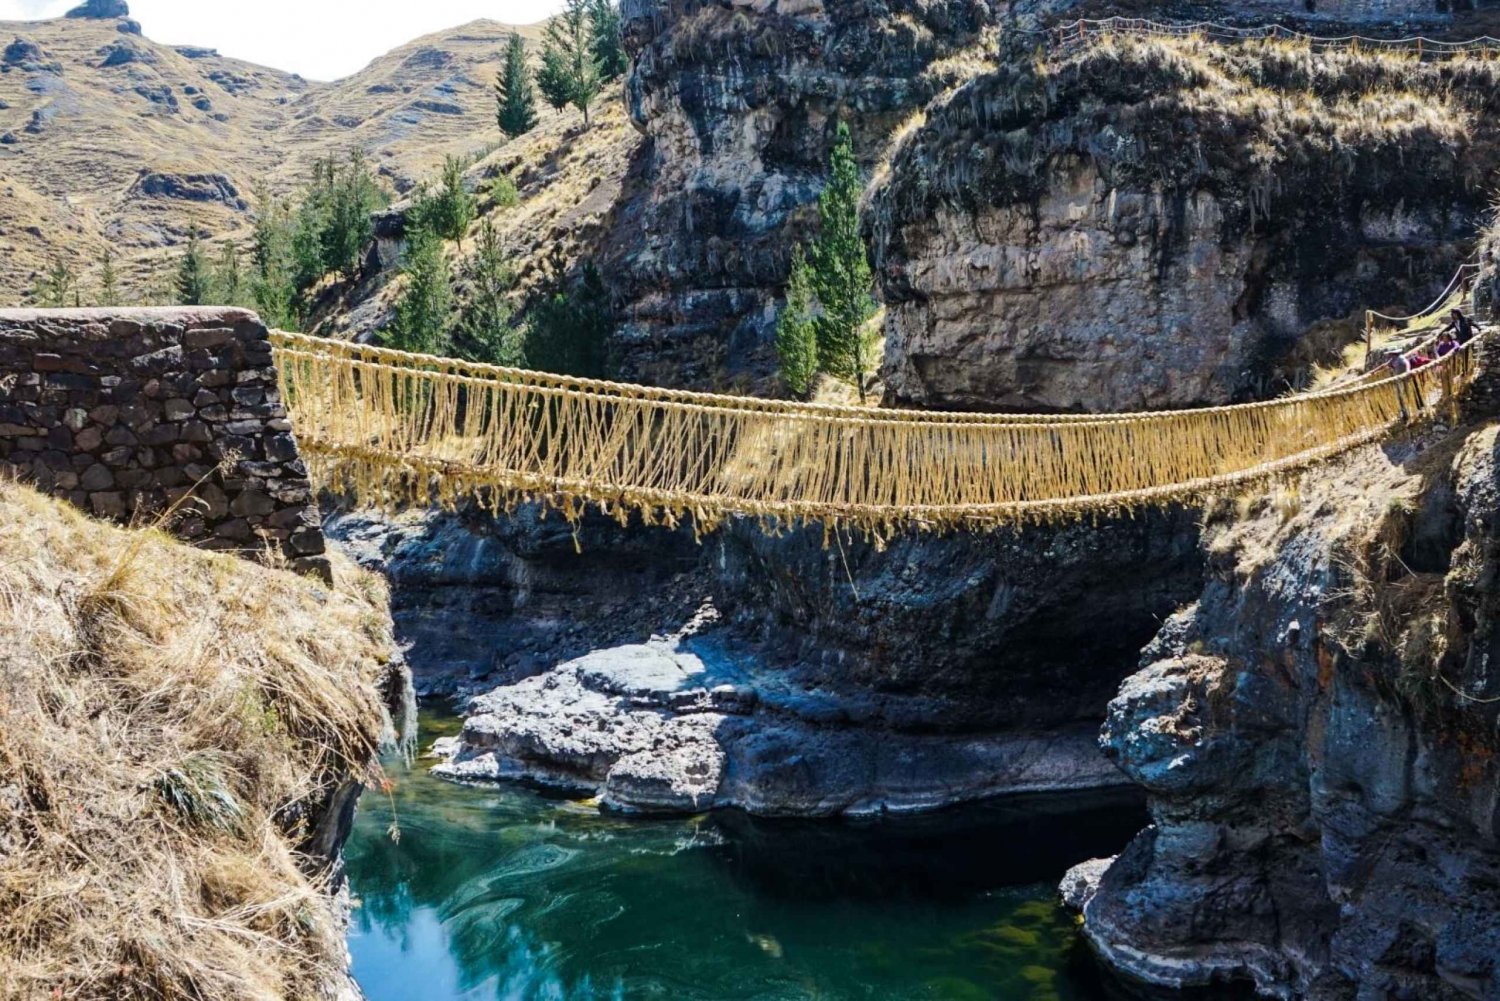 Full Day – Tour to the Inca Bridge of Qeswachaka